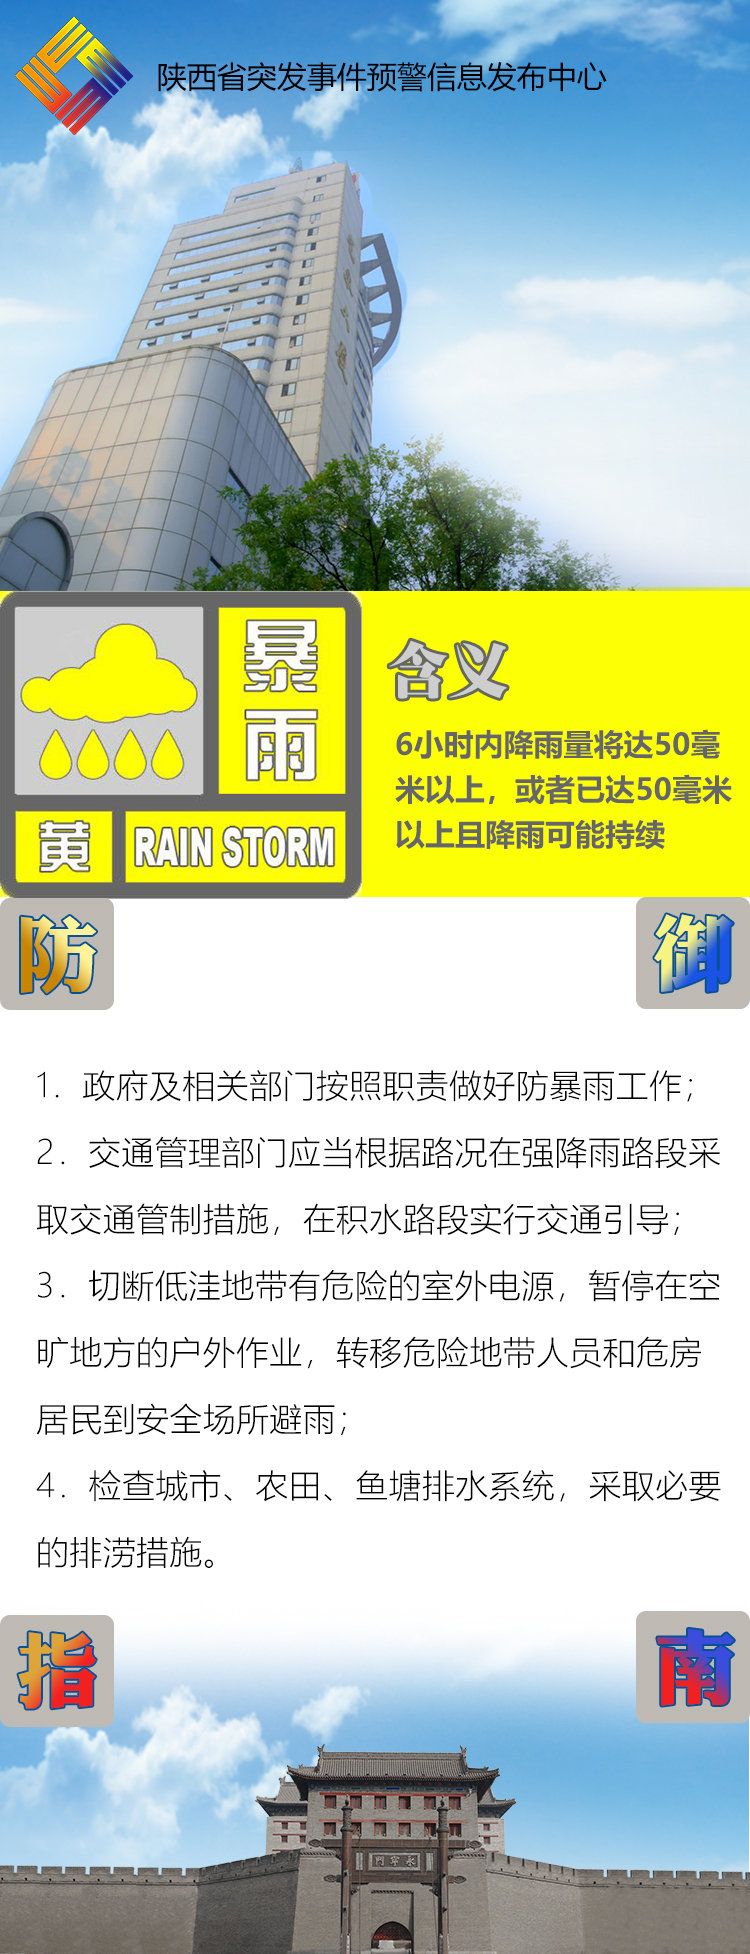 陕西继续发布暴雨黄色预警 这些地方6小时内降雨量将超50毫米